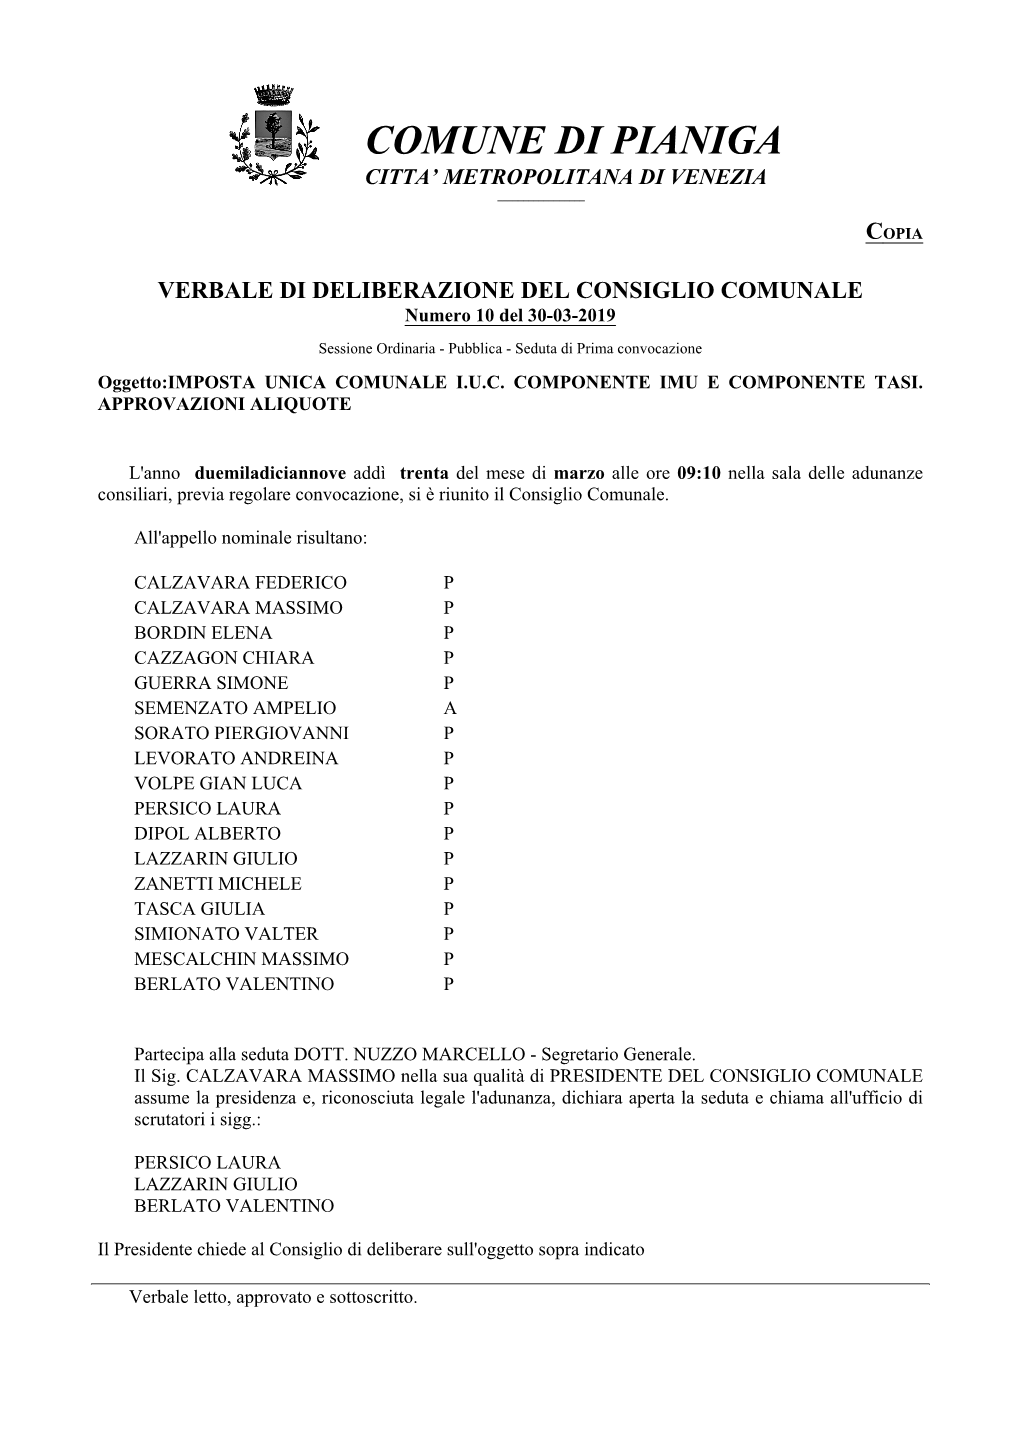 VERBALE DI DELIBERAZIONE DEL CONSIGLIO COMUNALE Numero 10 Del 30-03-2019